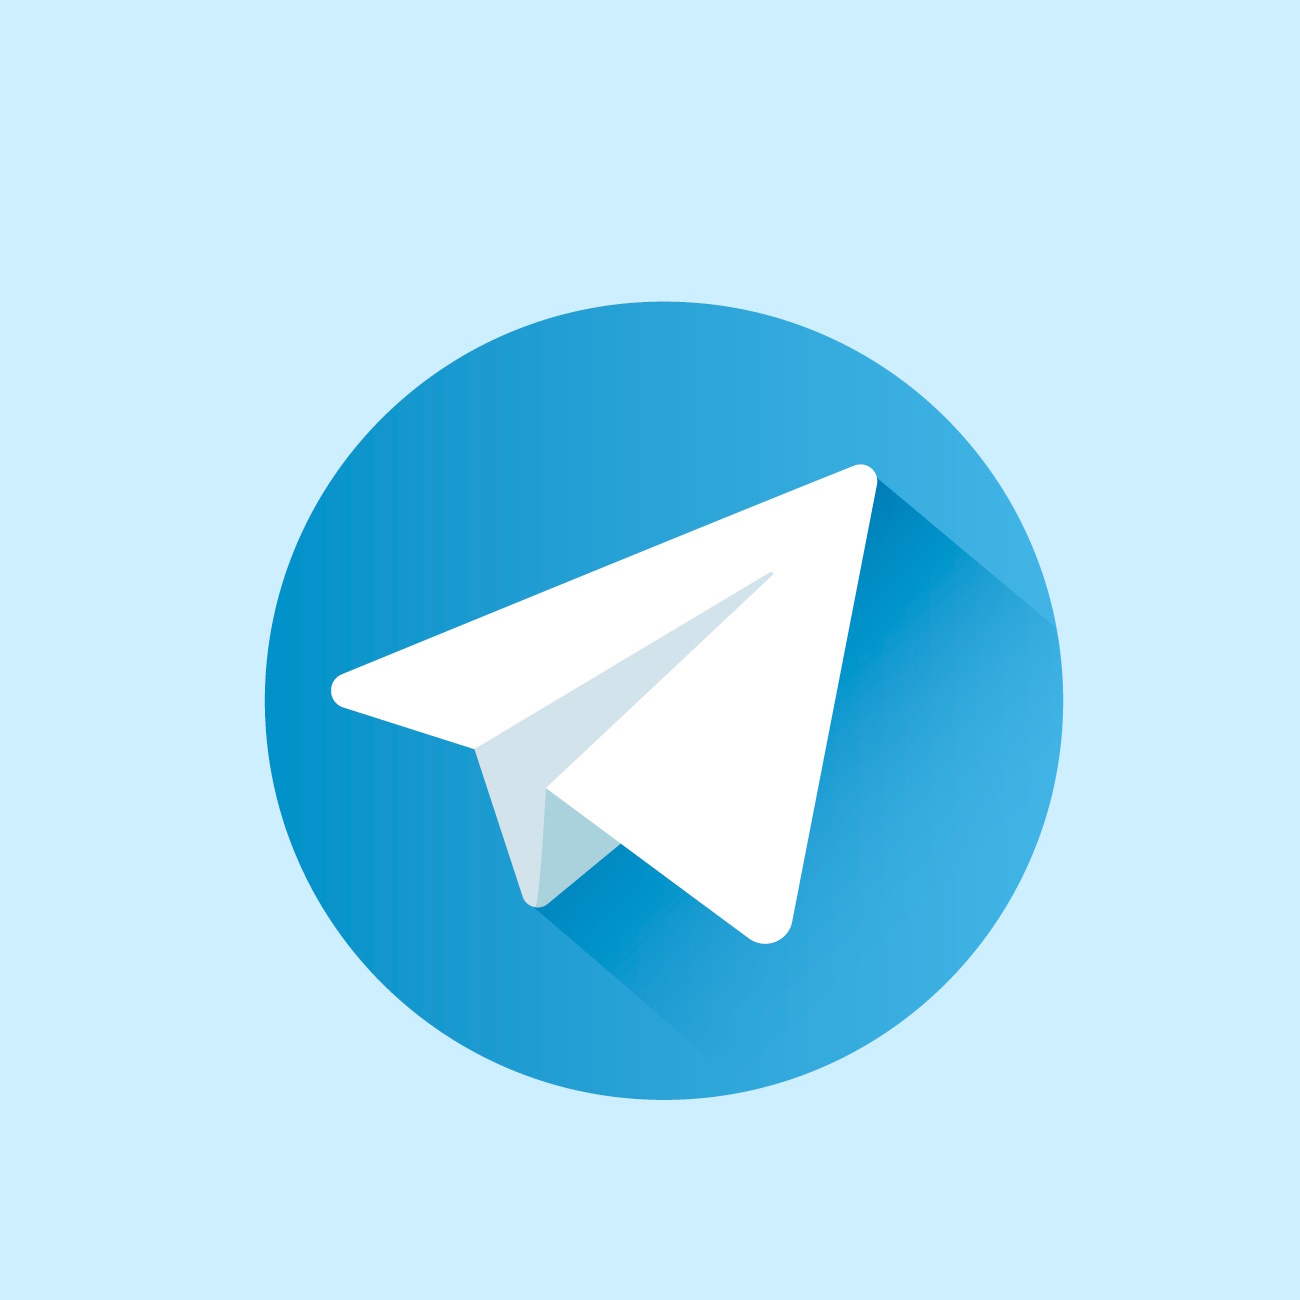 Detienen temporalmente el bloqueo de Telegram en España